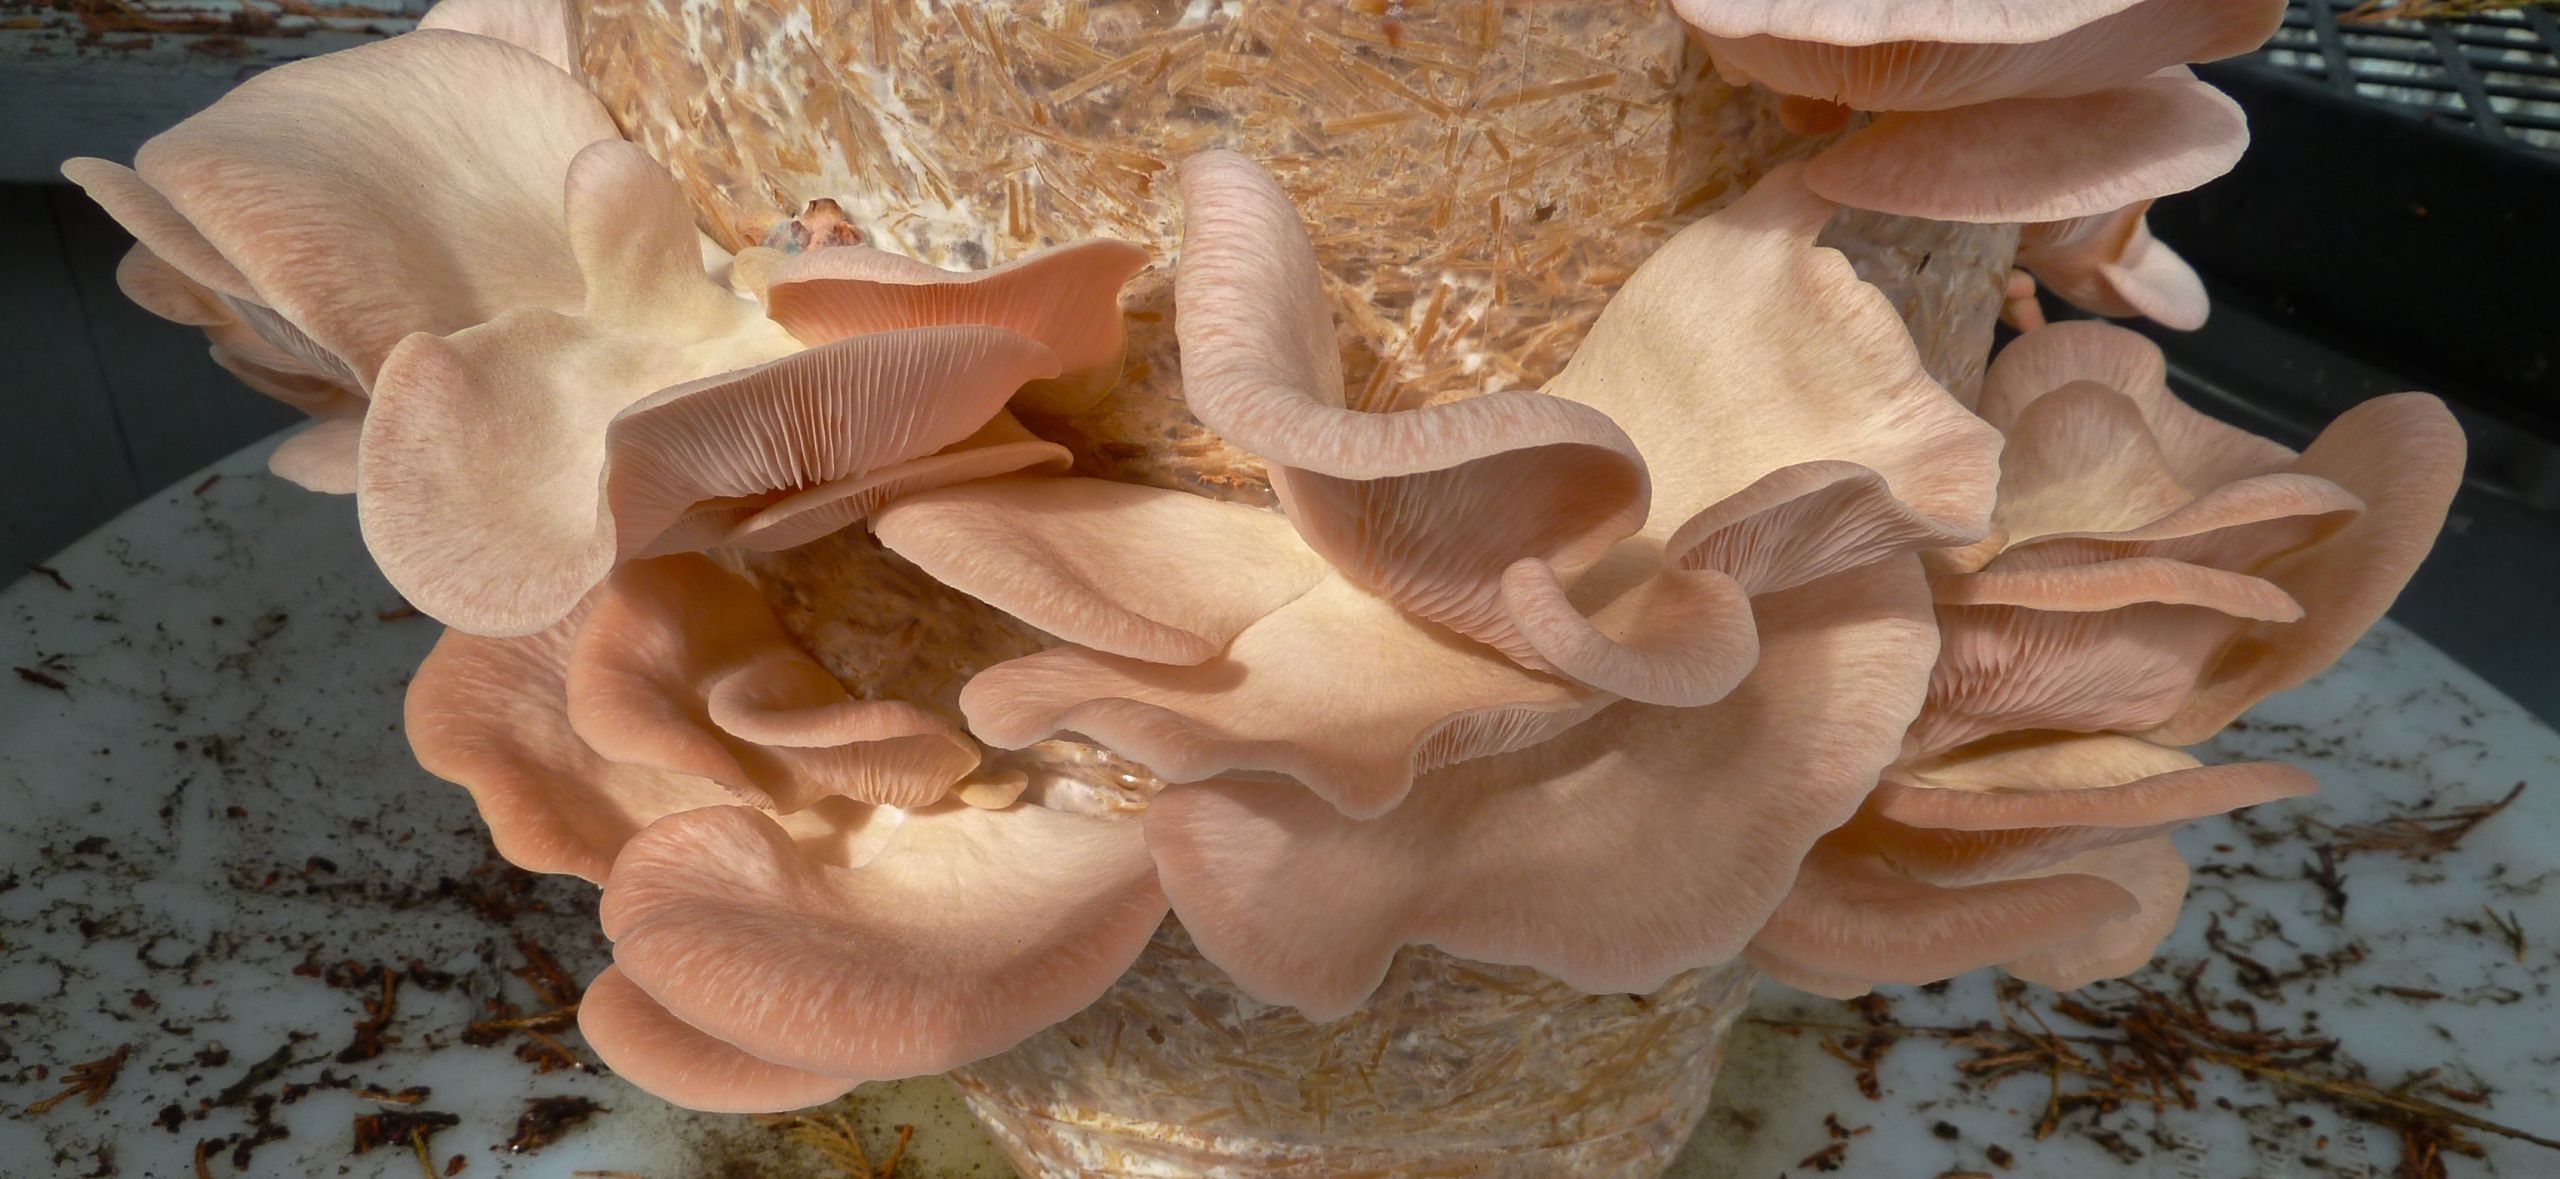 Pink Oyster Mushrooms
 Pleurotus djamor the Love Mushroom